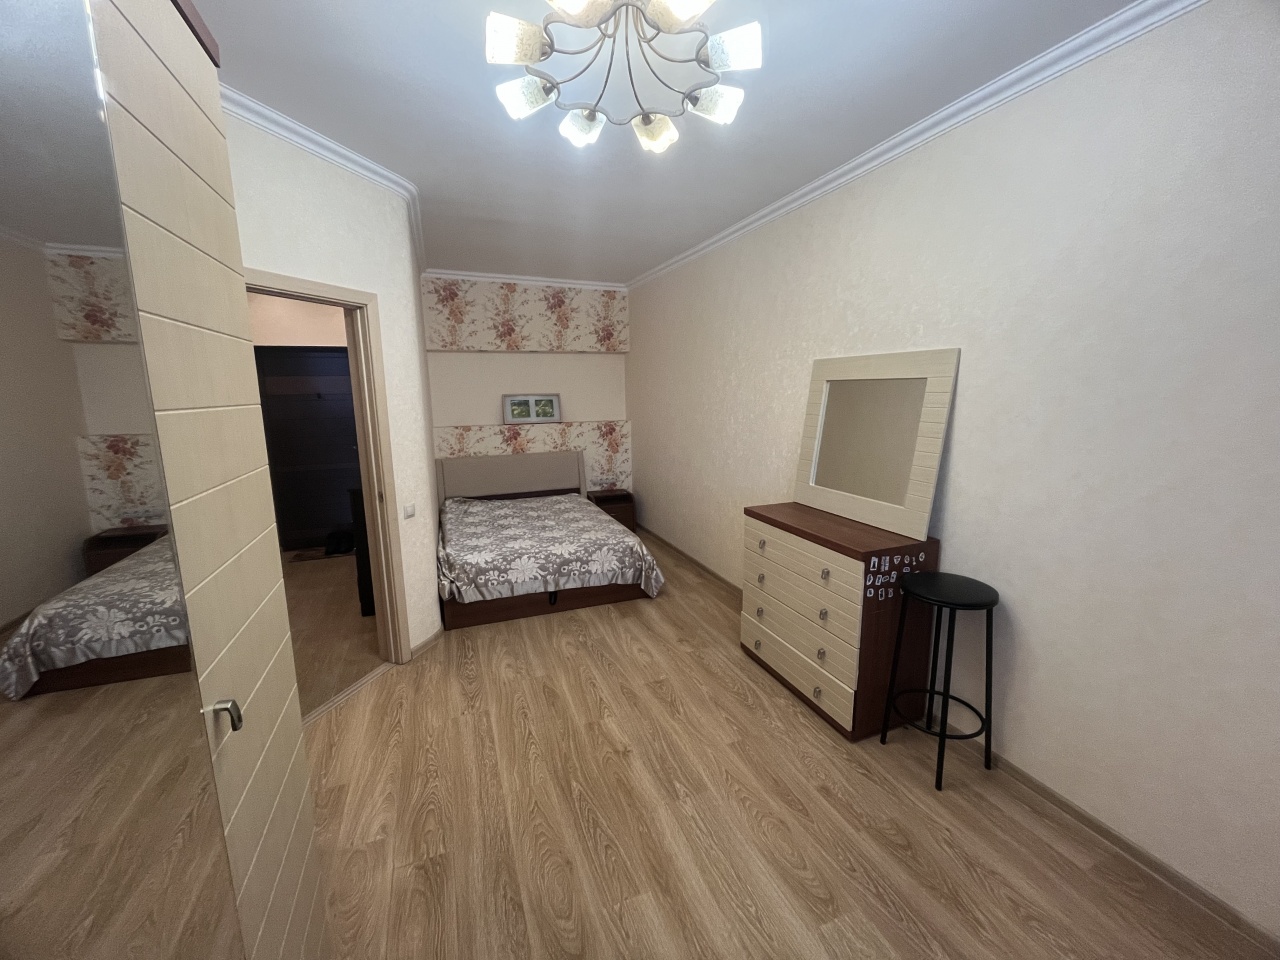 Продажа однокомнатной квартиры г. Мытищи ул. Белобородова д 11 к 1. 44.1 кв.м. 14/14 эт.